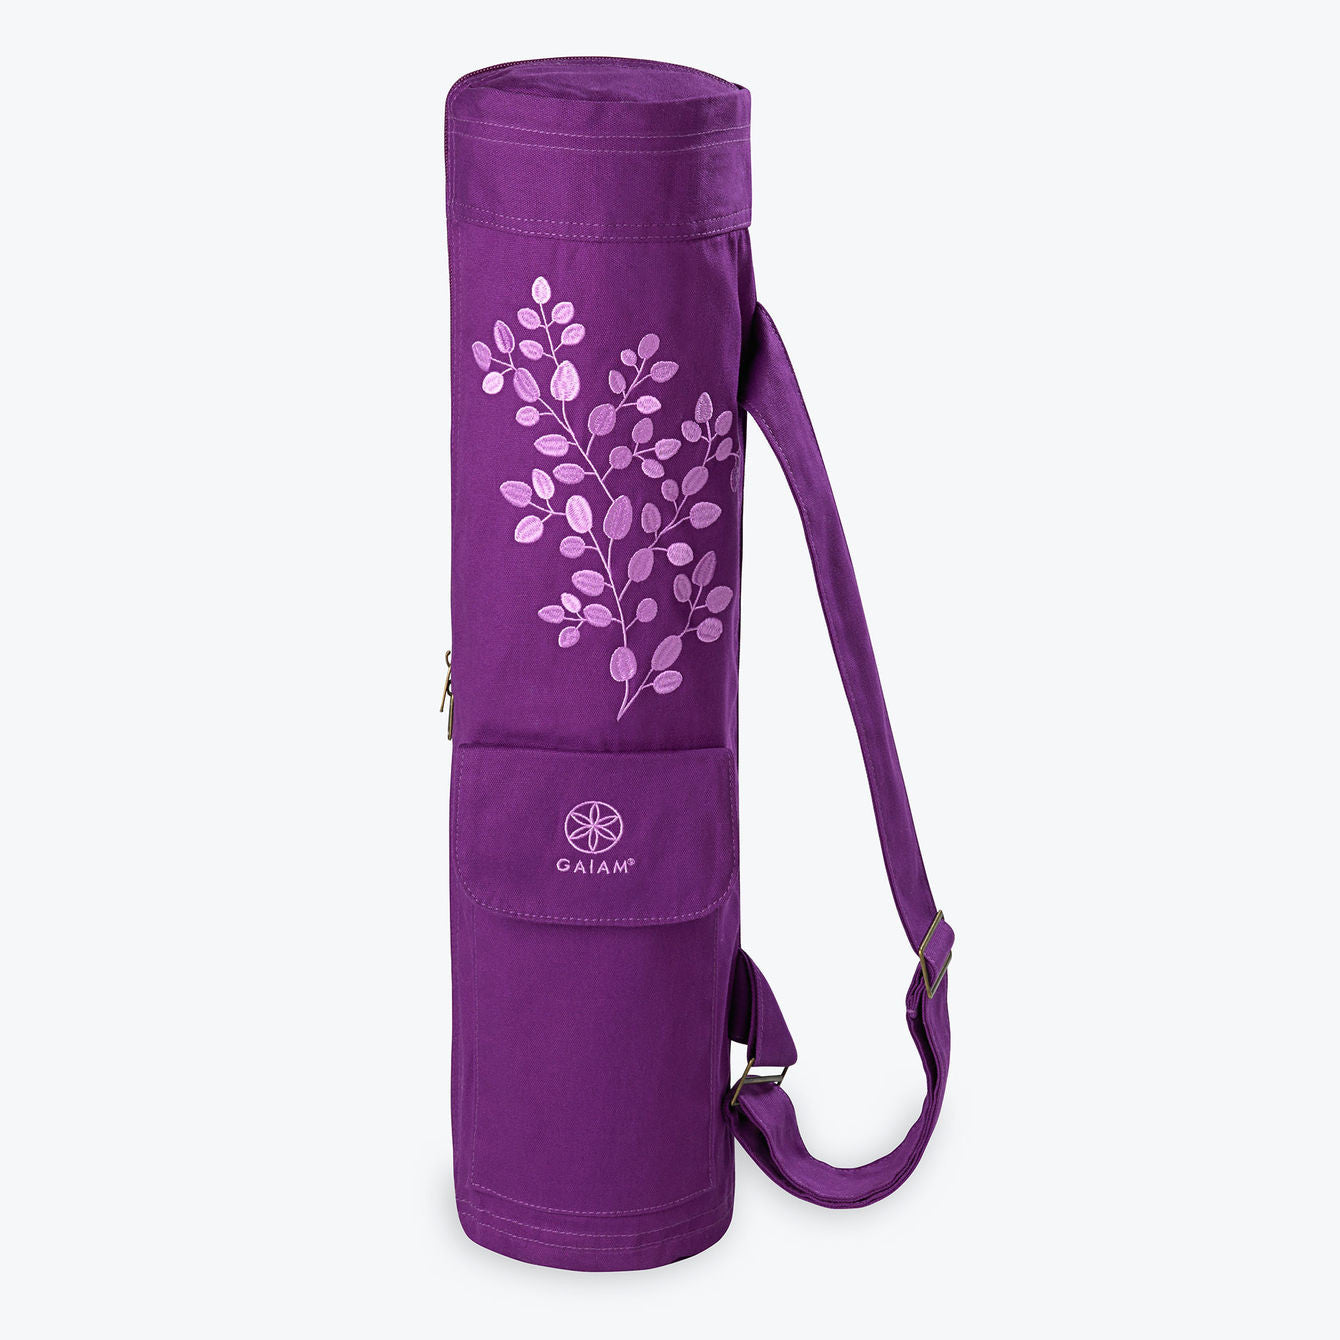 Gaiam luxury Yoga bag in Fuchsia and black interior 10